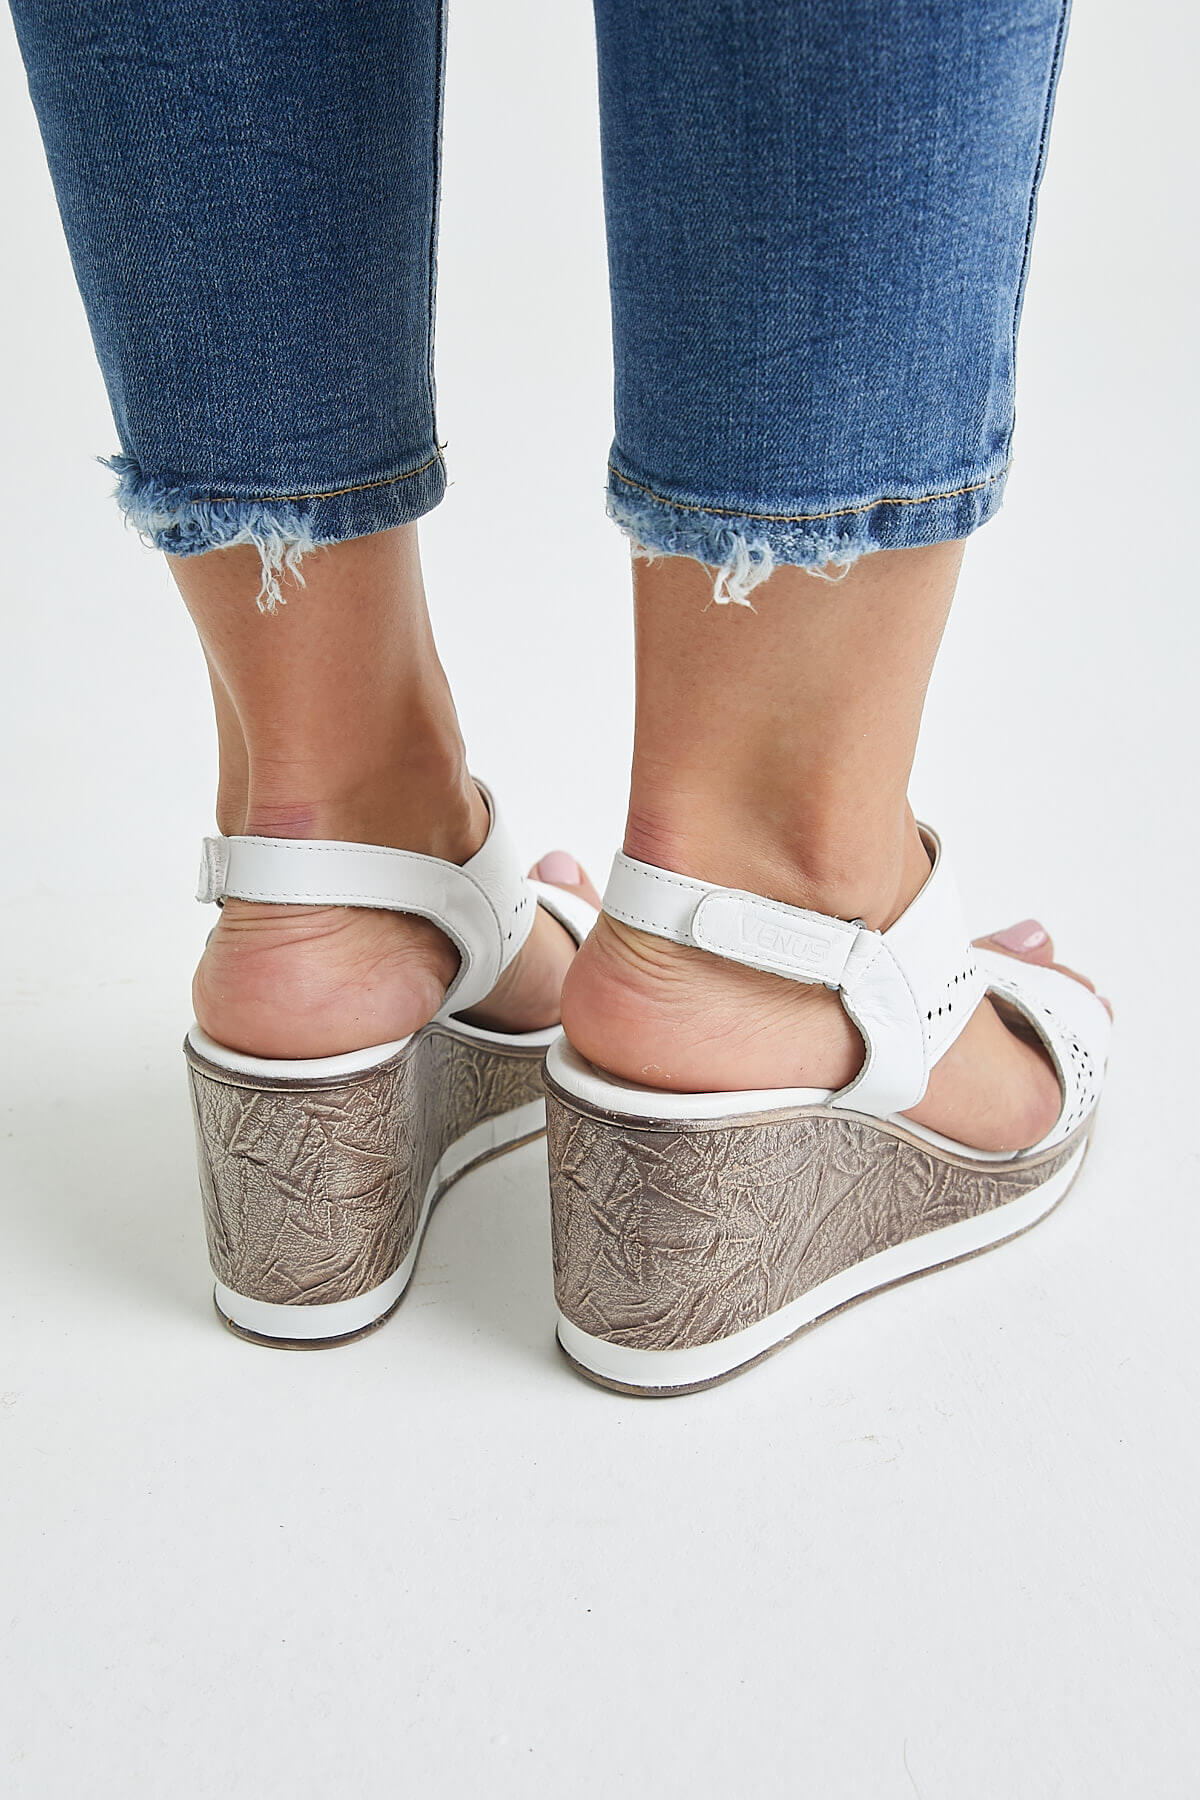 Kadın Dolgu Topuk Sandalet Beyaz 2015707Y - Thumbnail